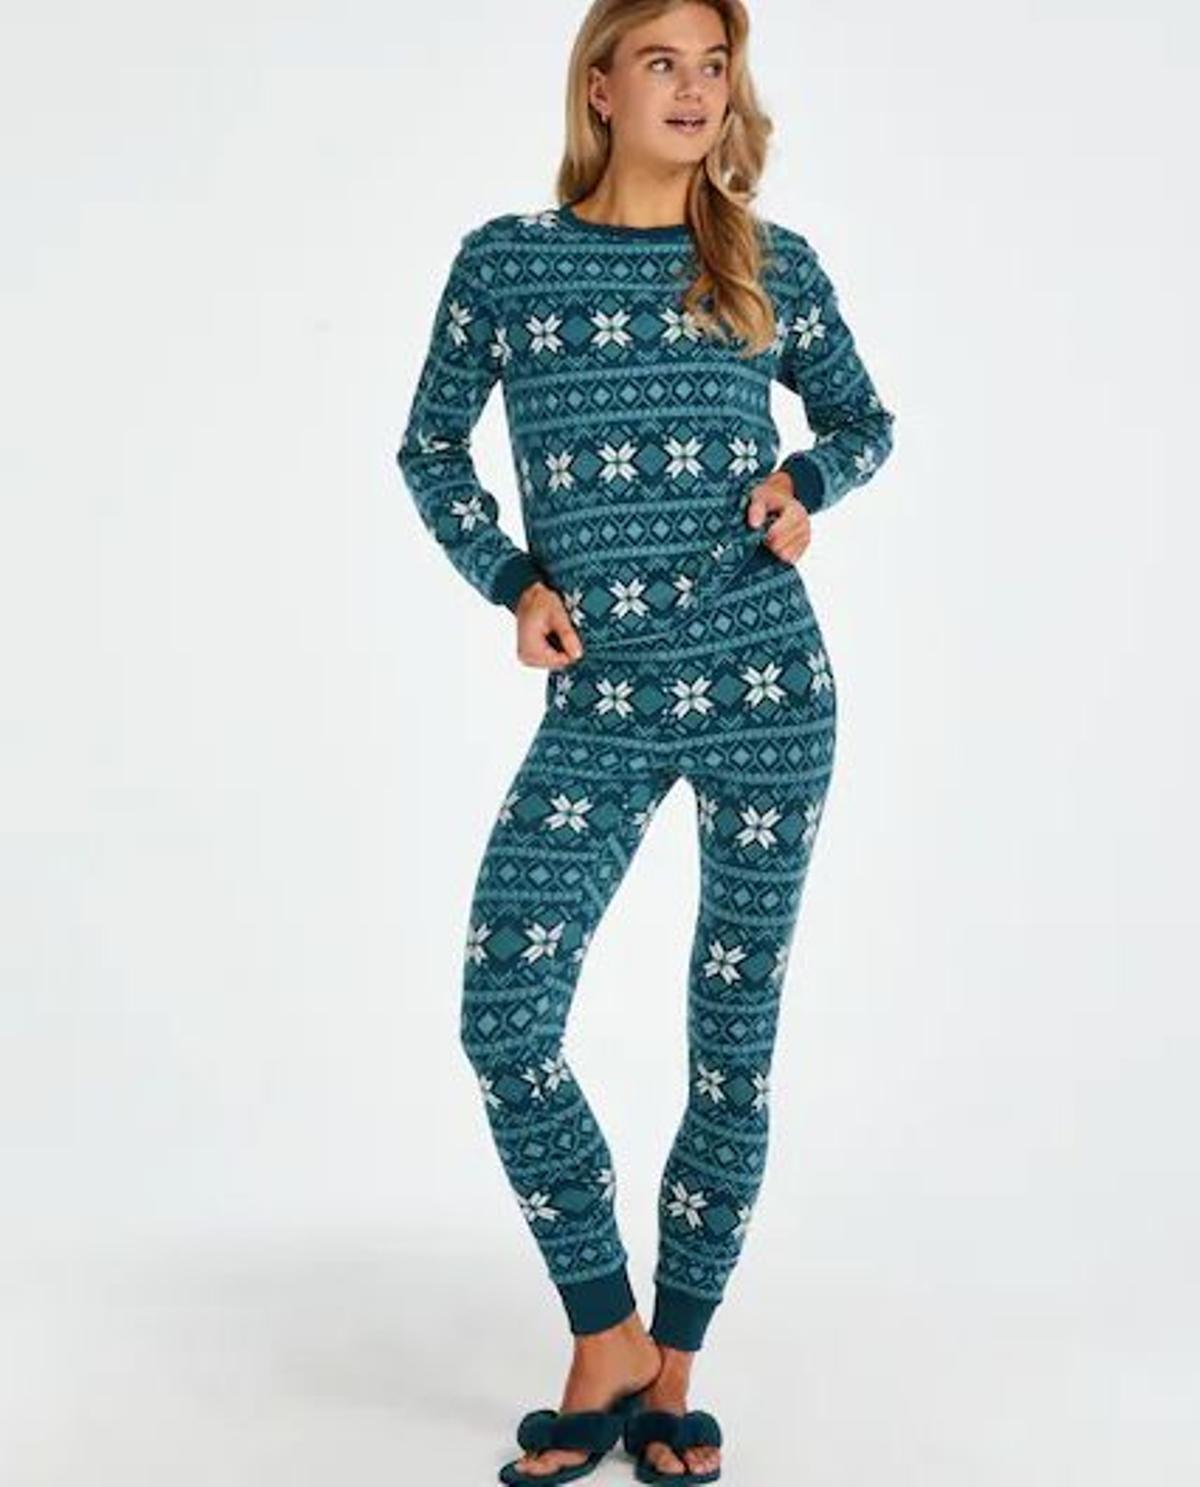 Pijama navideño (Precio: 34,99 euros)